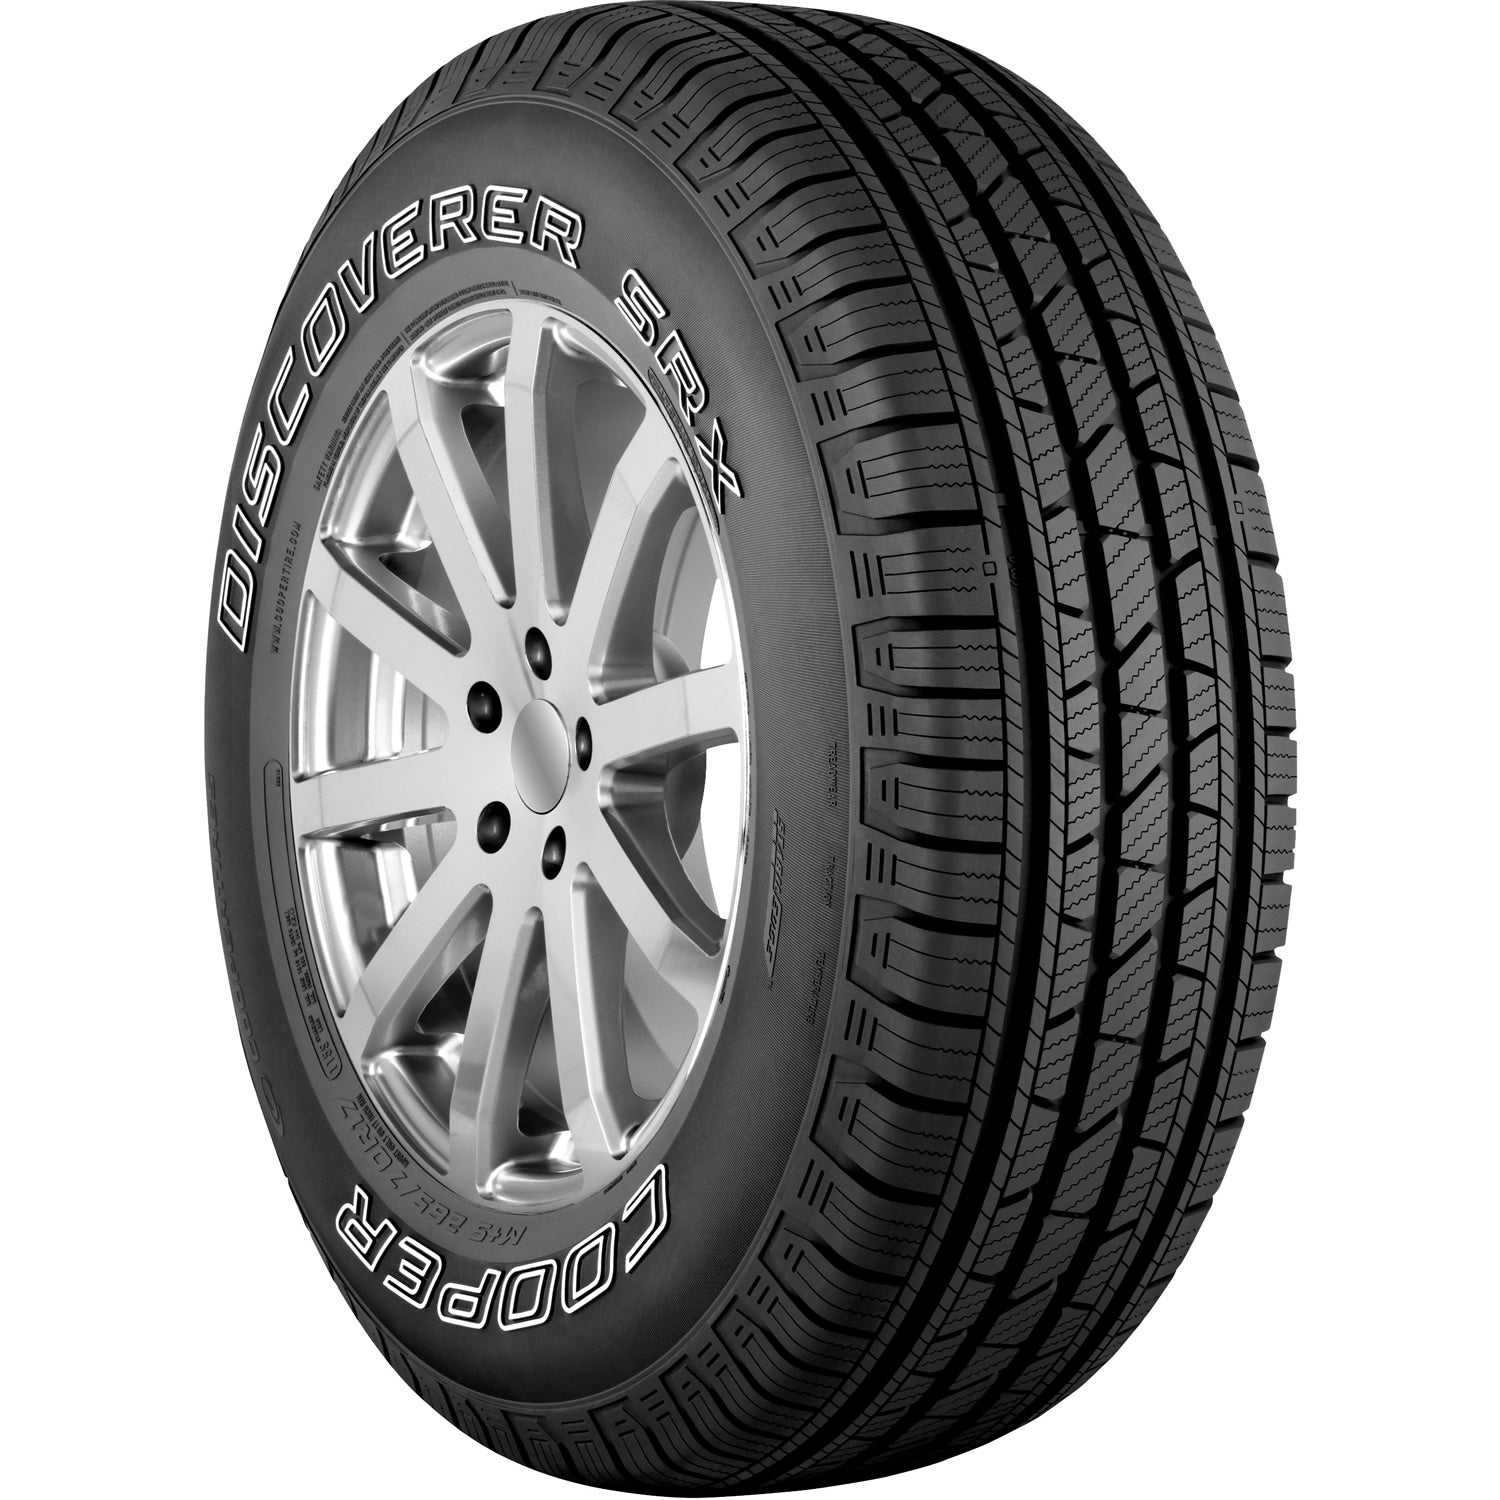 COOPER DISCOVERER SRX 265/65R17 (30.6X10.4R 17) Tires